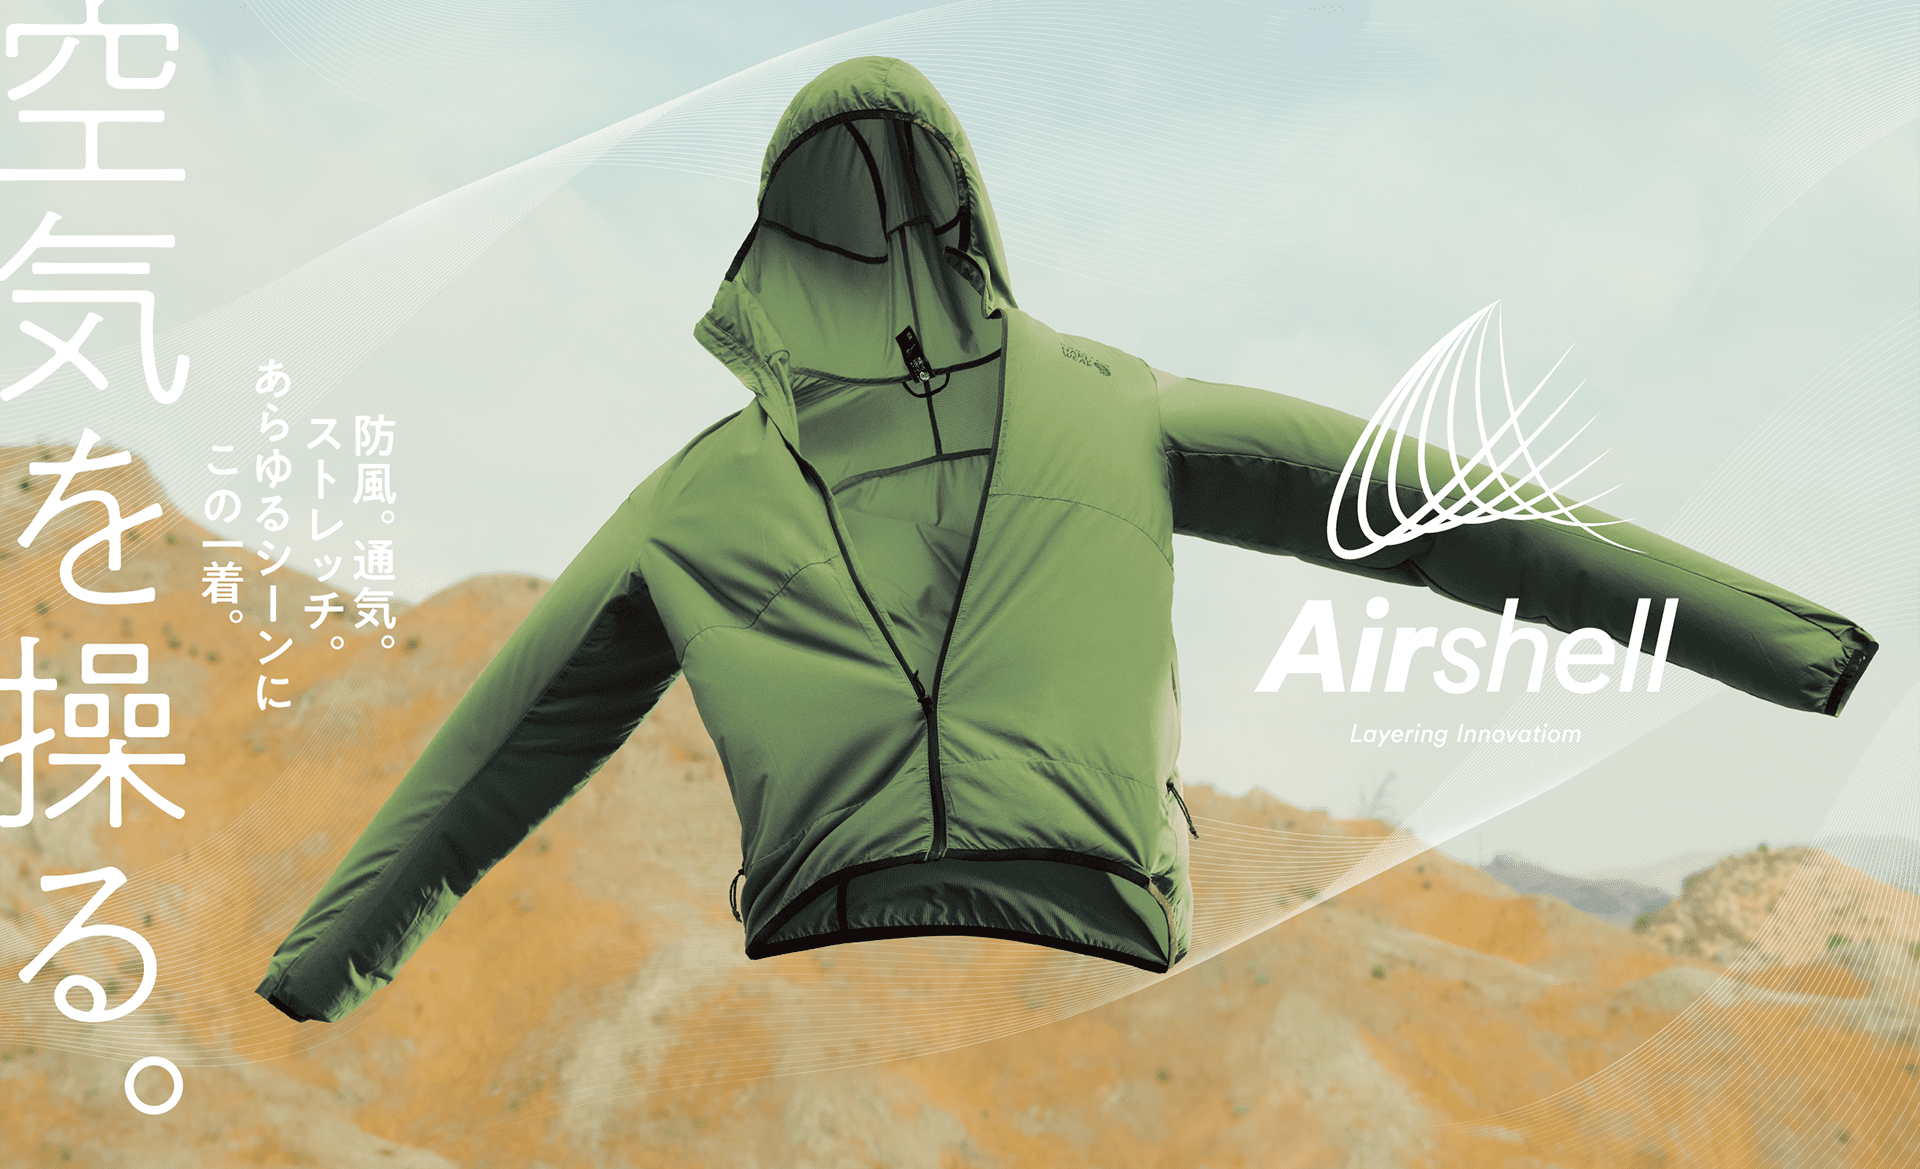 Airshell Layering Innovation 空気を操る。防風。通気。ストレッチ。あらゆるシーンにこの一着。